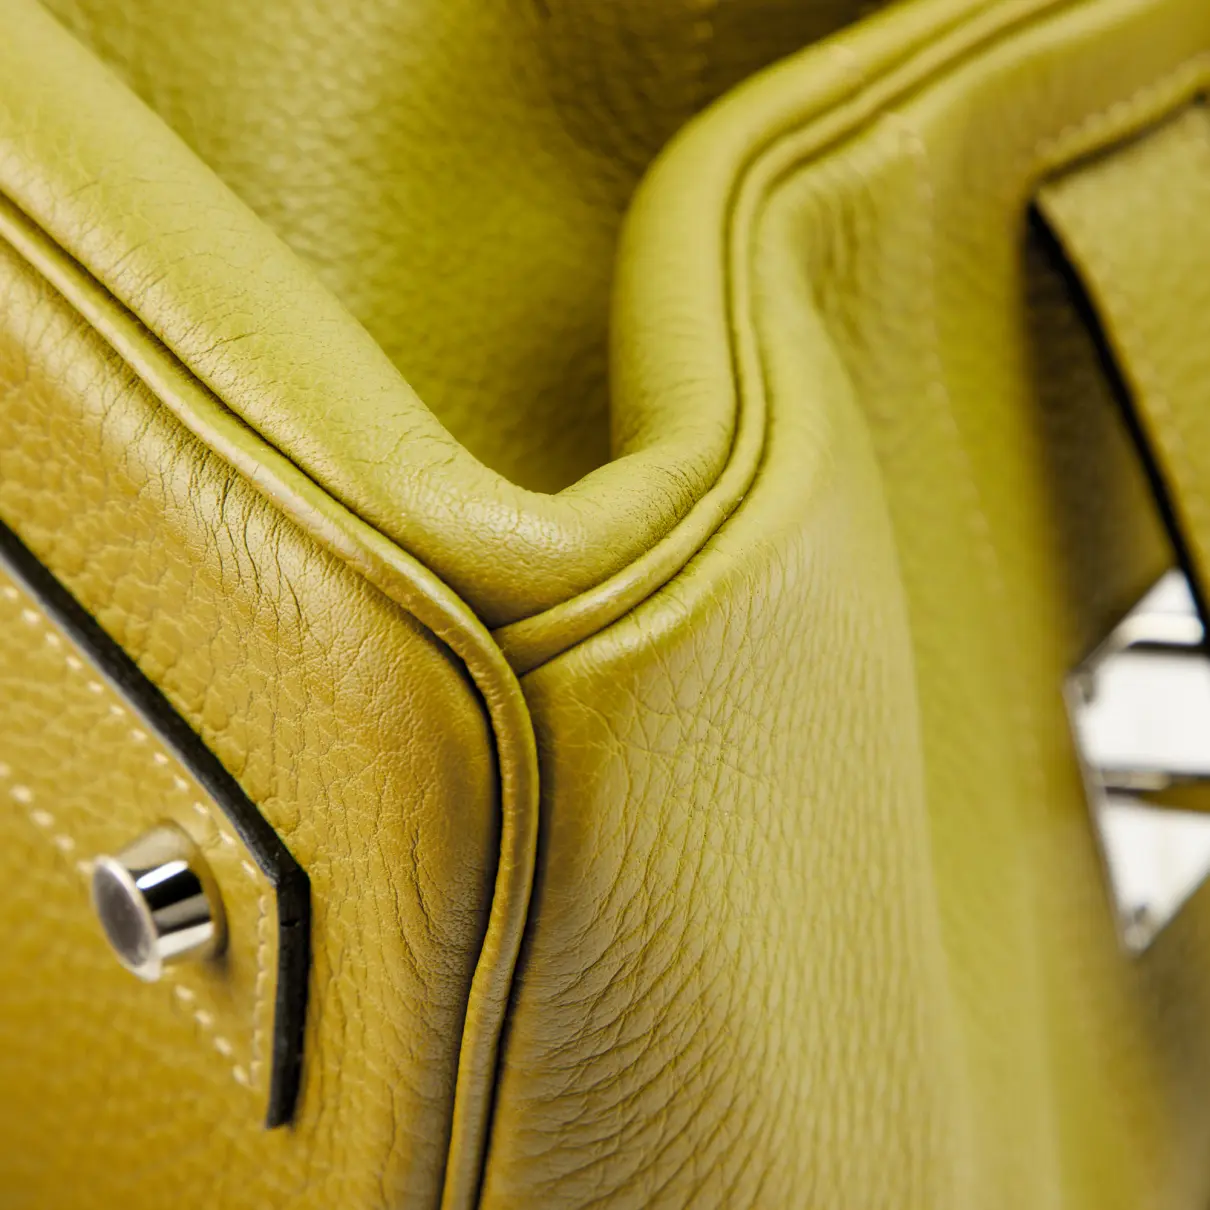 Birkin Shoulder leather handbag Hermès - Vintage